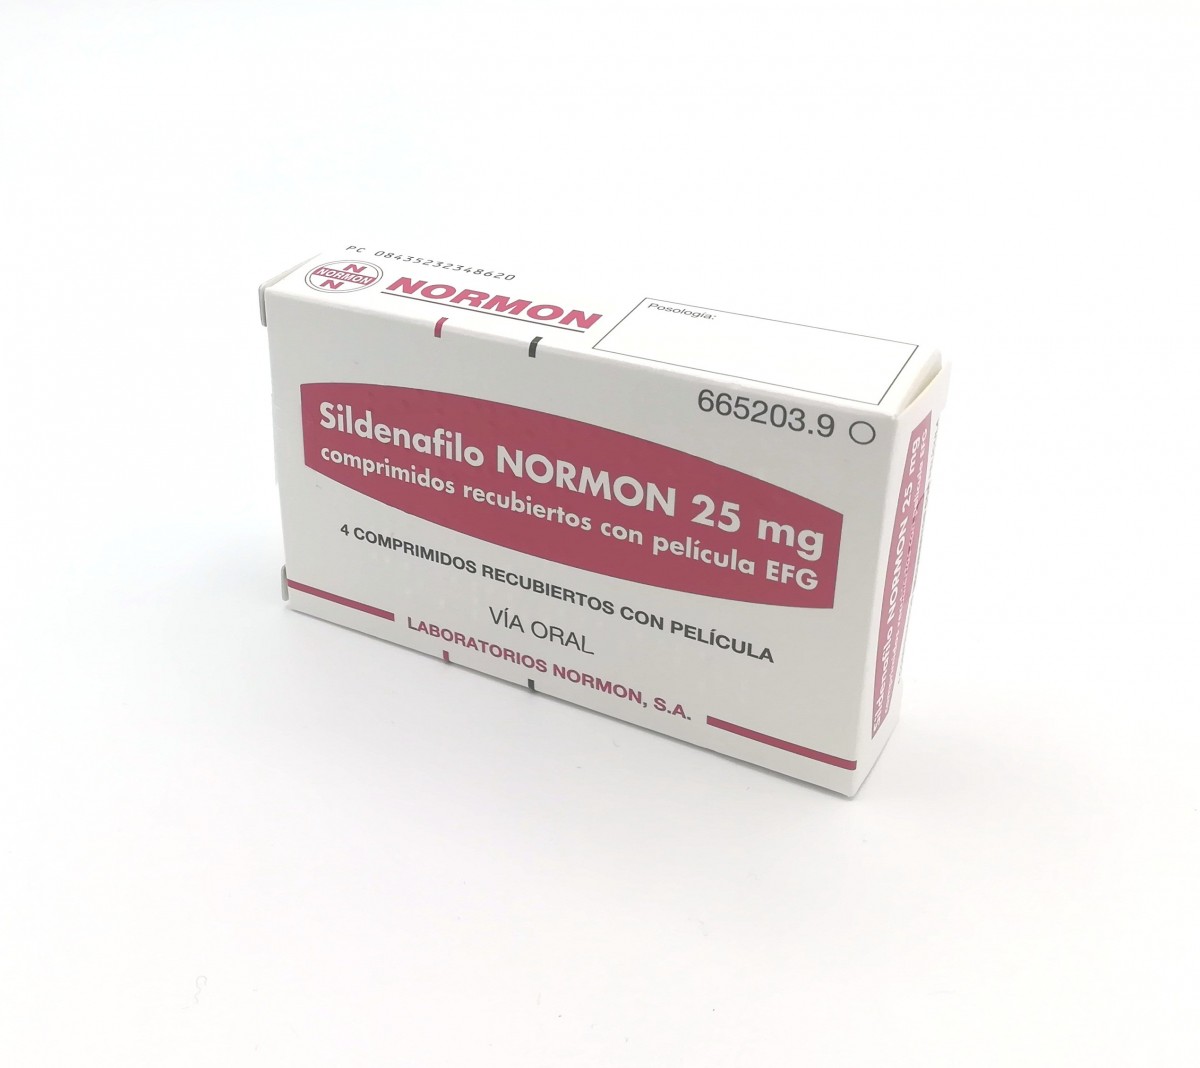 SILDENAFILO NORMON 25 mg COMPRIMIDOS RECUBIERTOS CON PELICULA EFG , 4 comprimidos fotografía del envase.